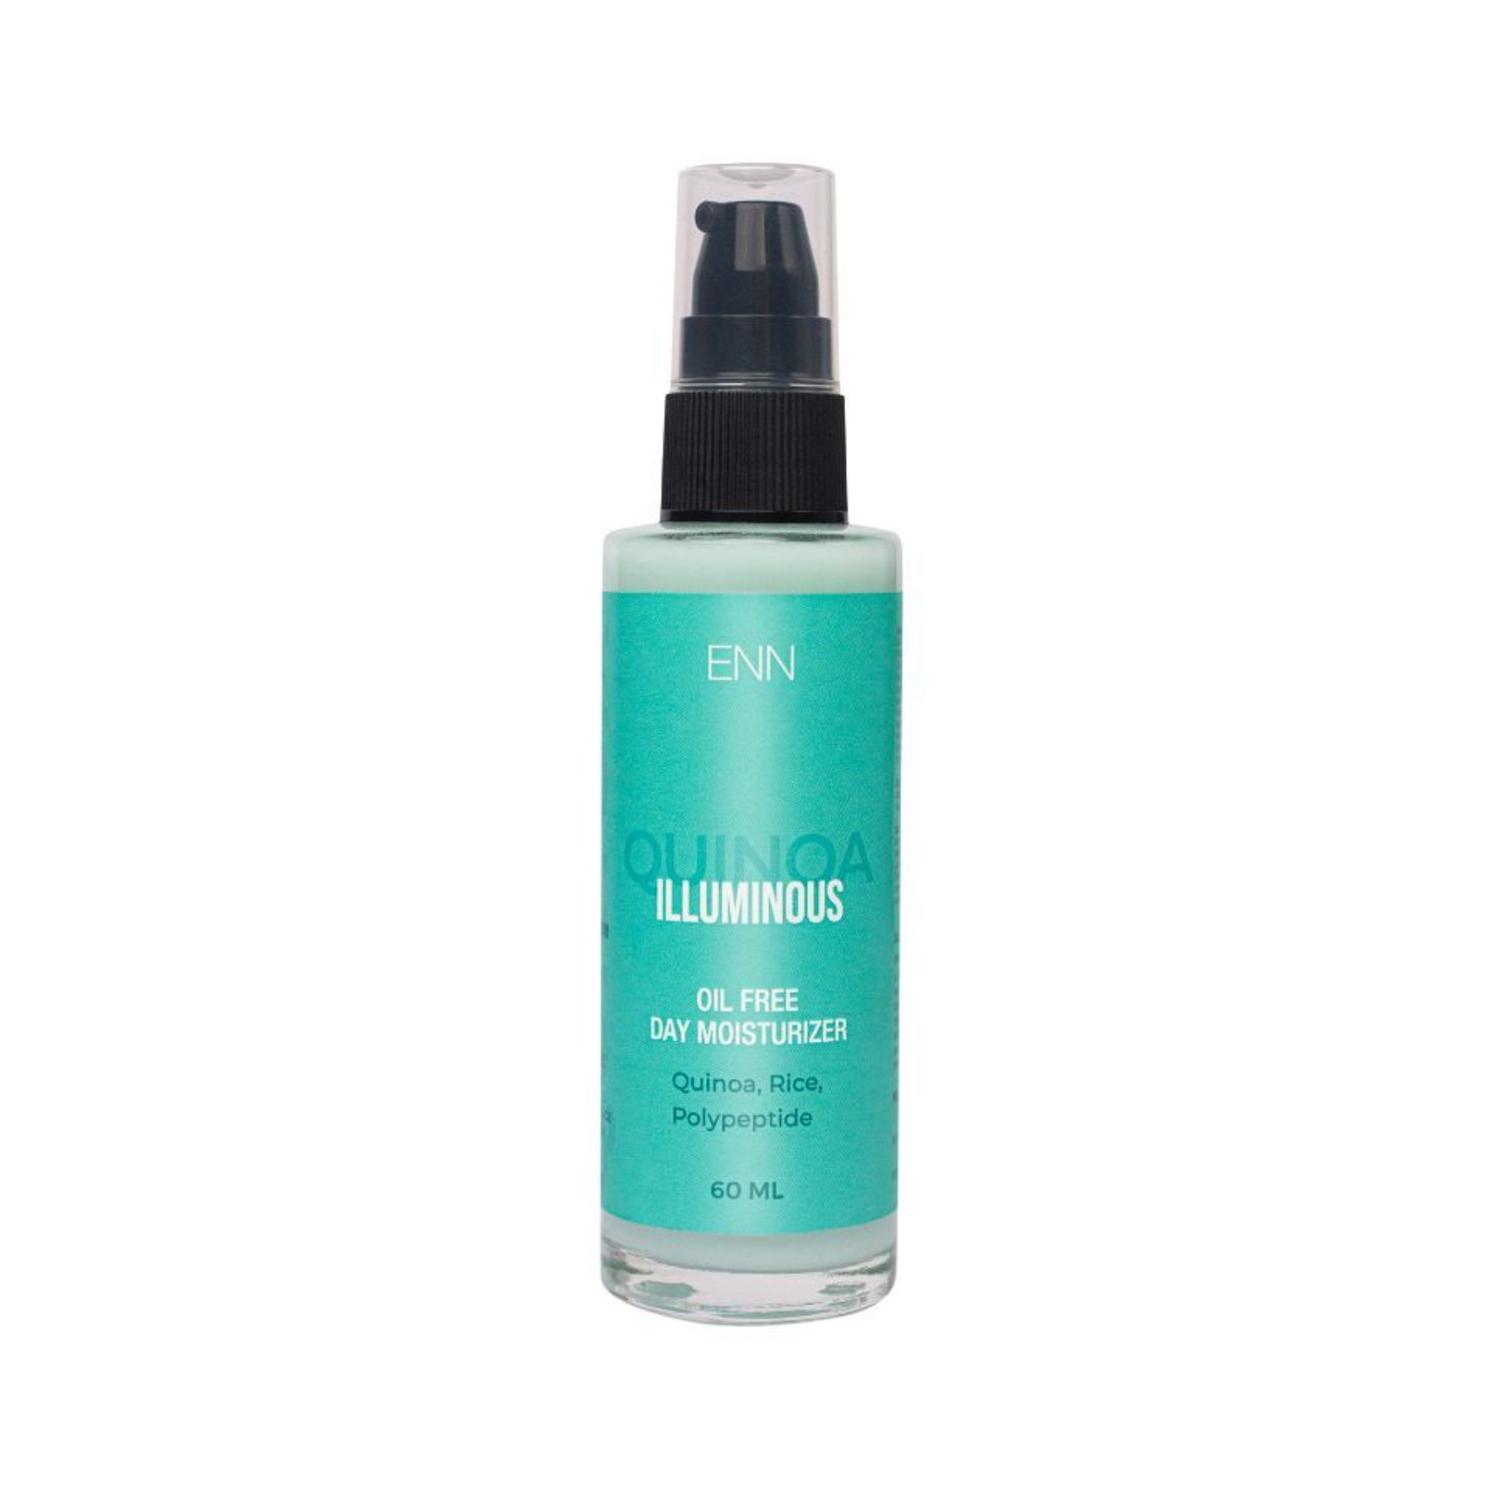 enn-illuminous-oil-free-day-moisturiser-(60ml)